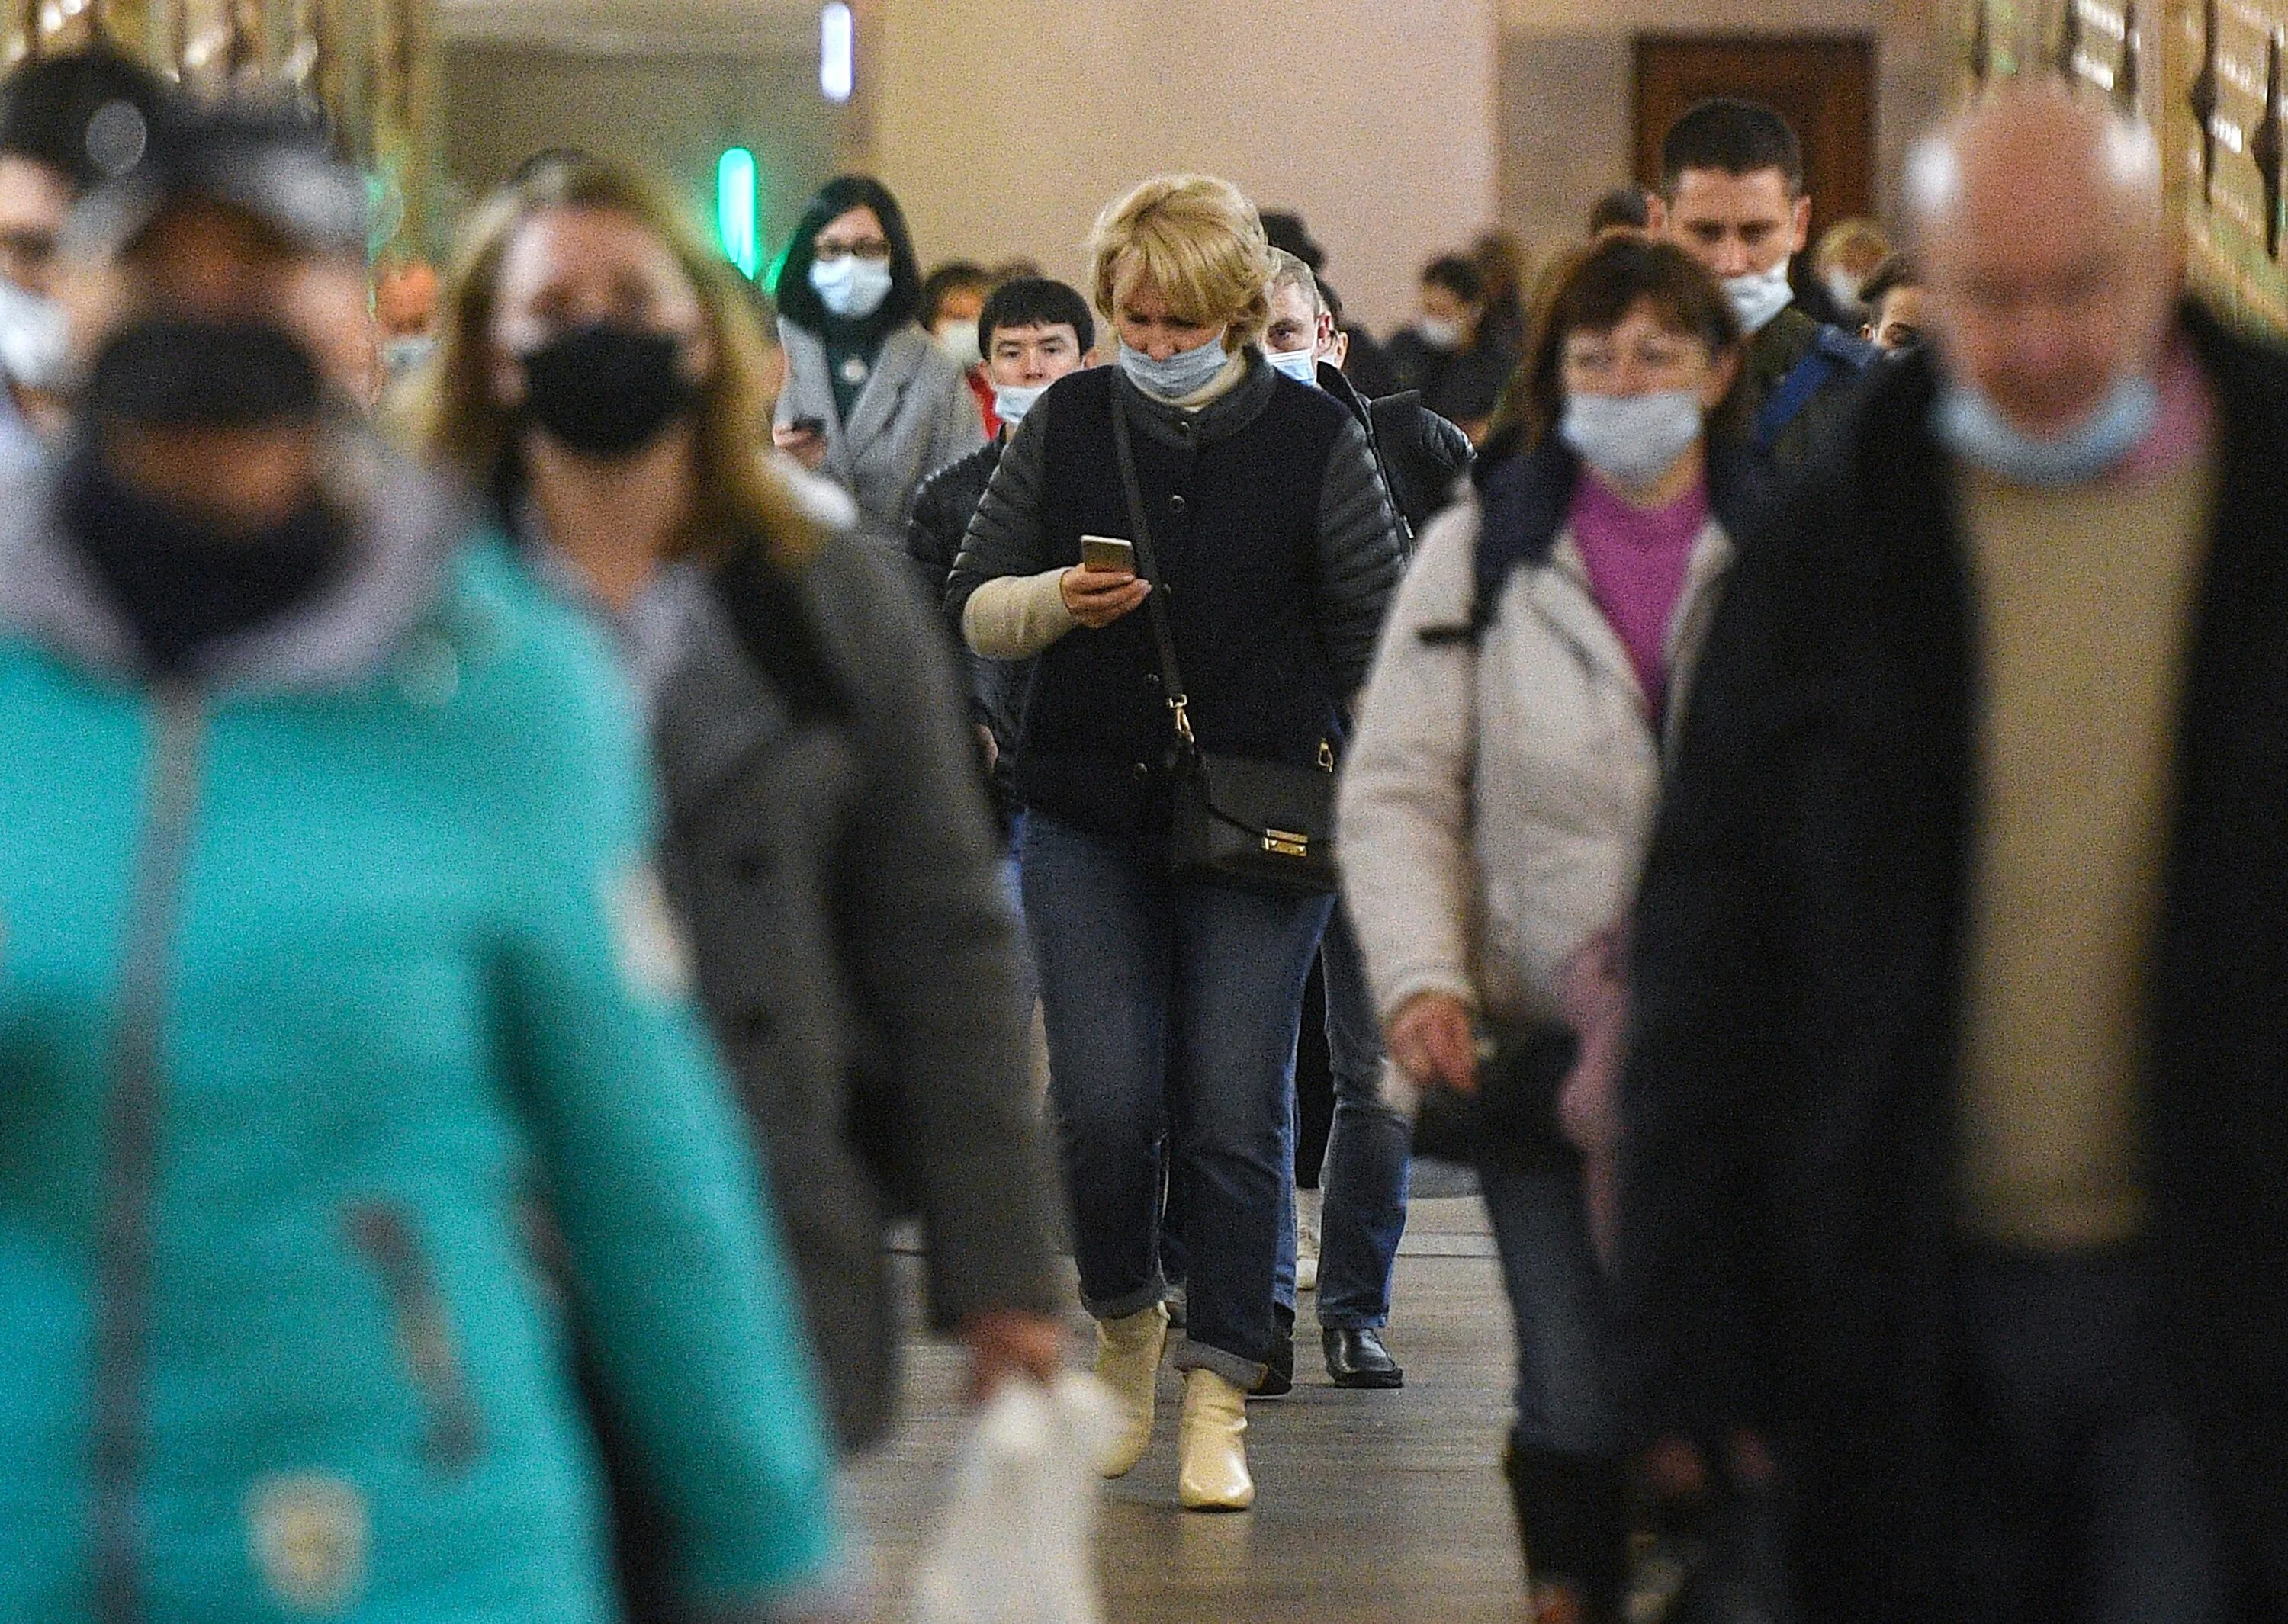 Эпидемия гриппа в городе толпа людей. Пандемия Covid 19 в РФ. Завершение пандемии. Передают риа новости